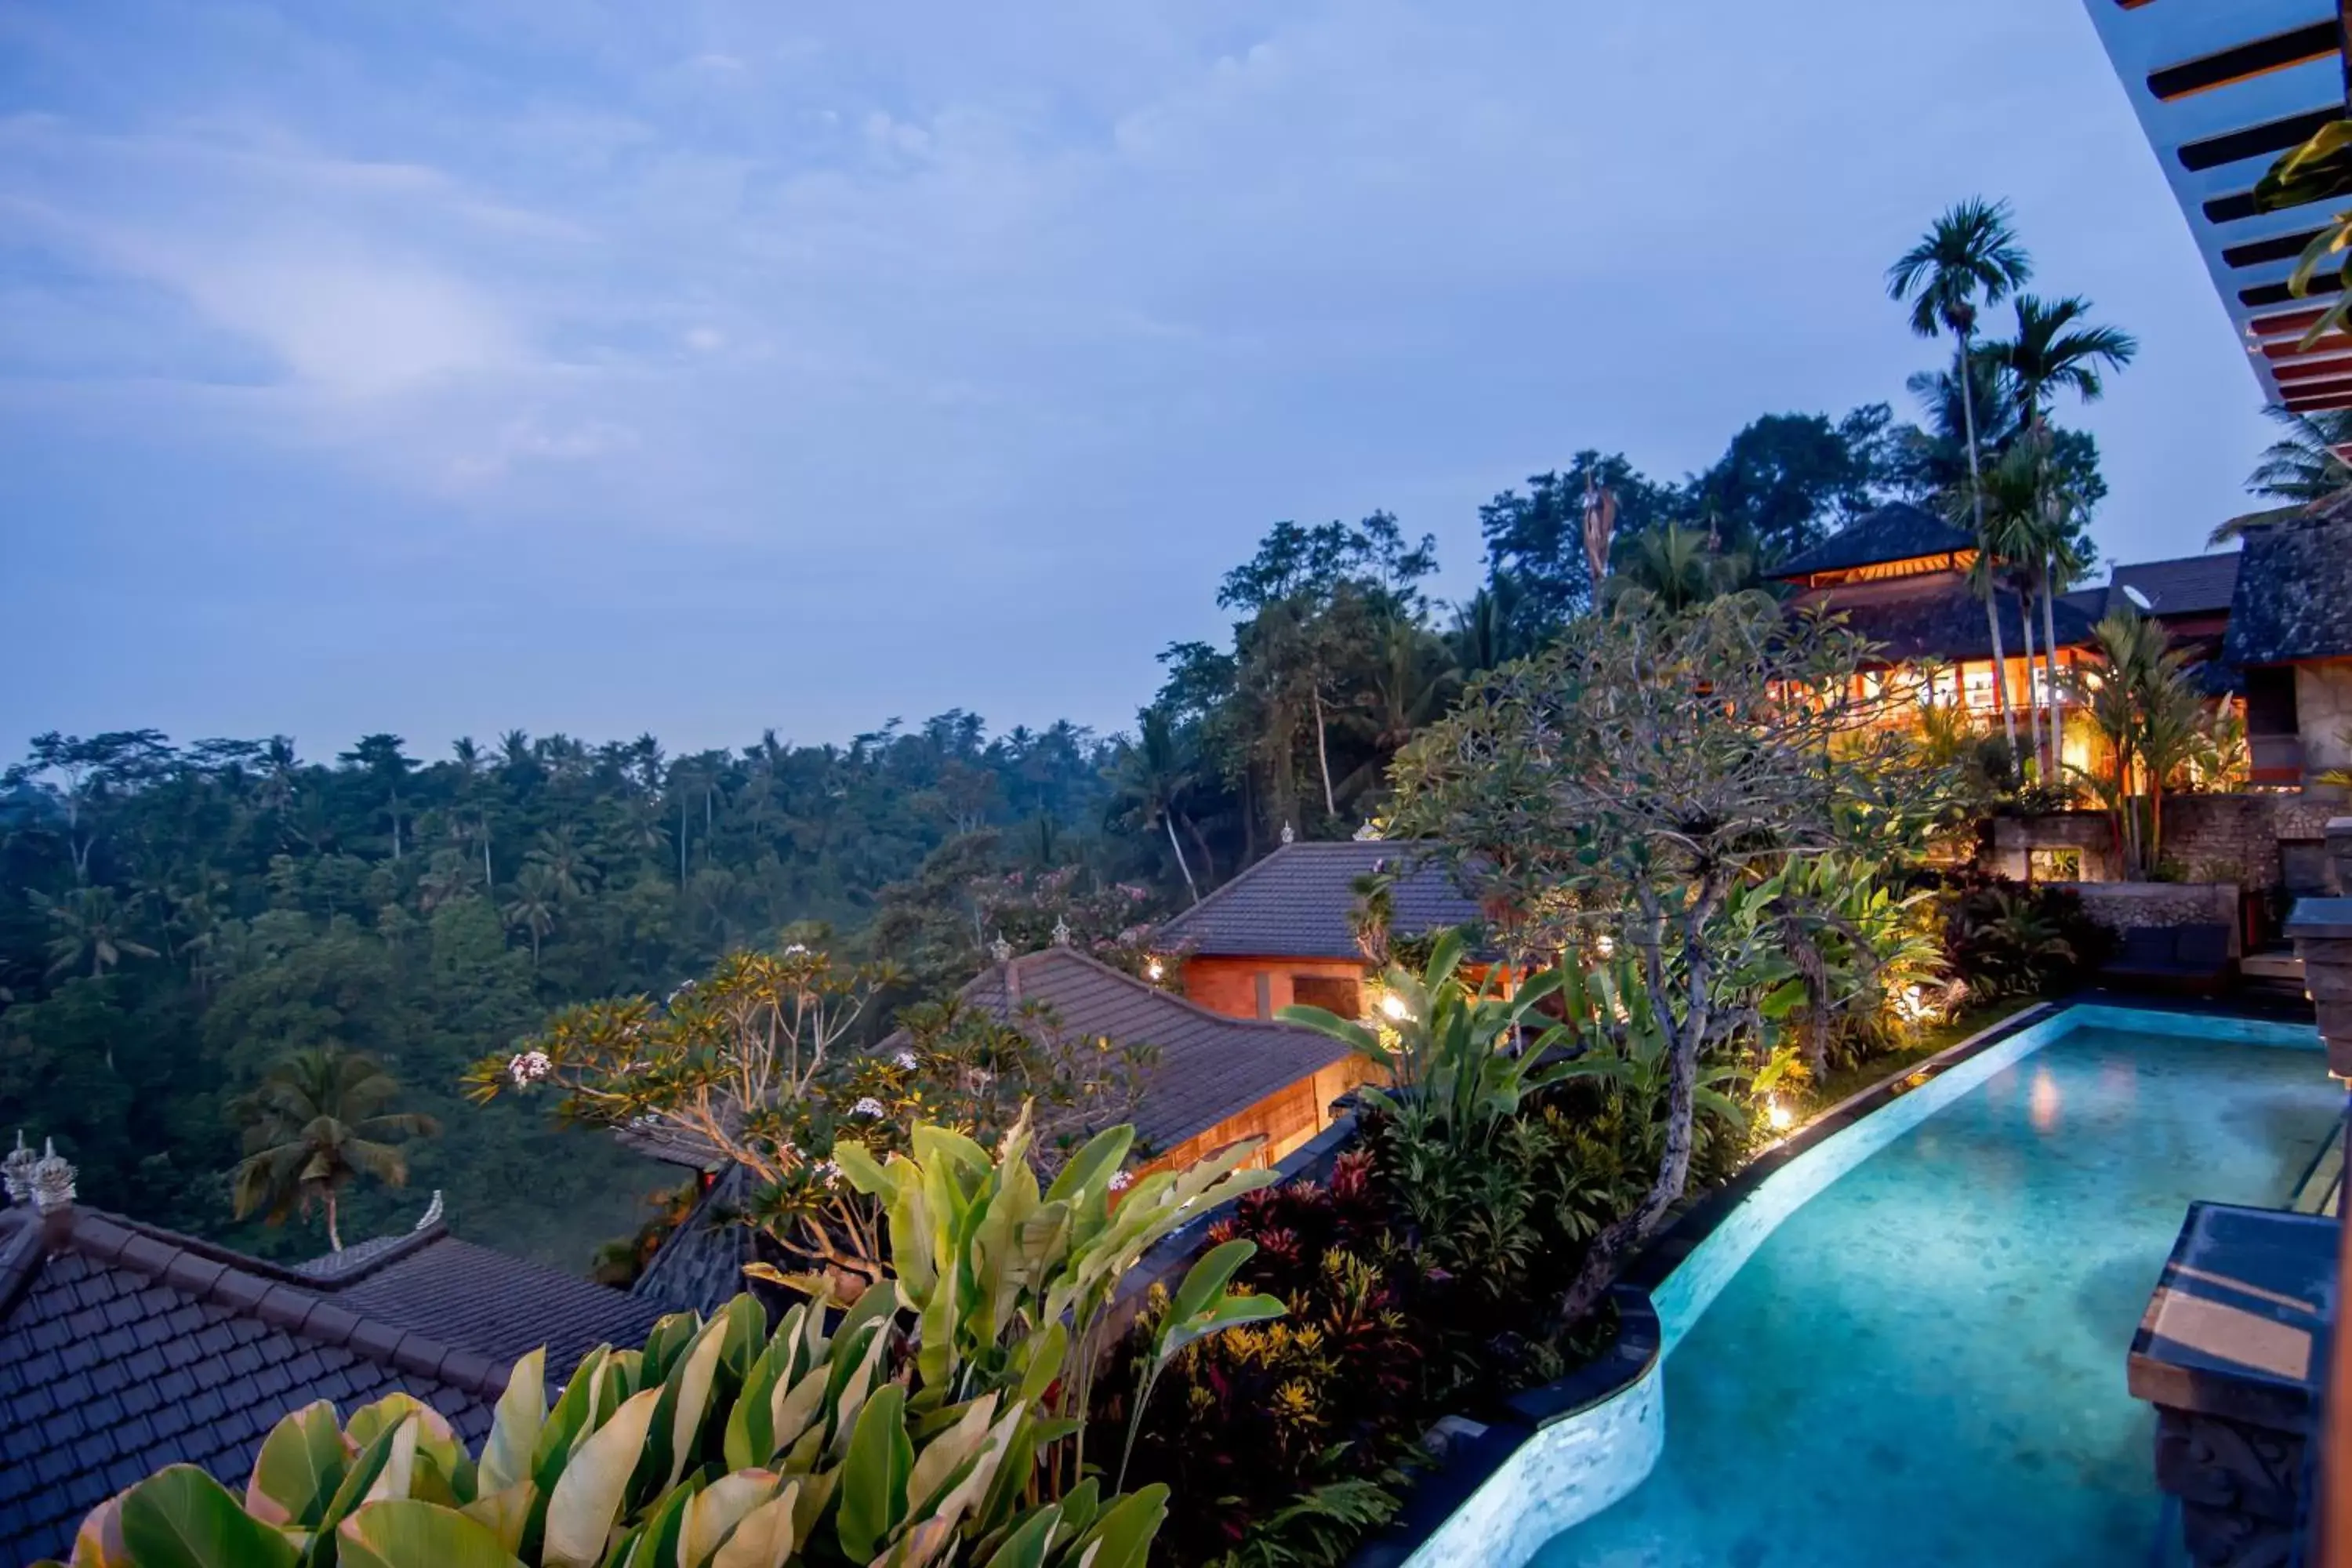 Pool View in Ulun Ubud Resort - CHSE Certified